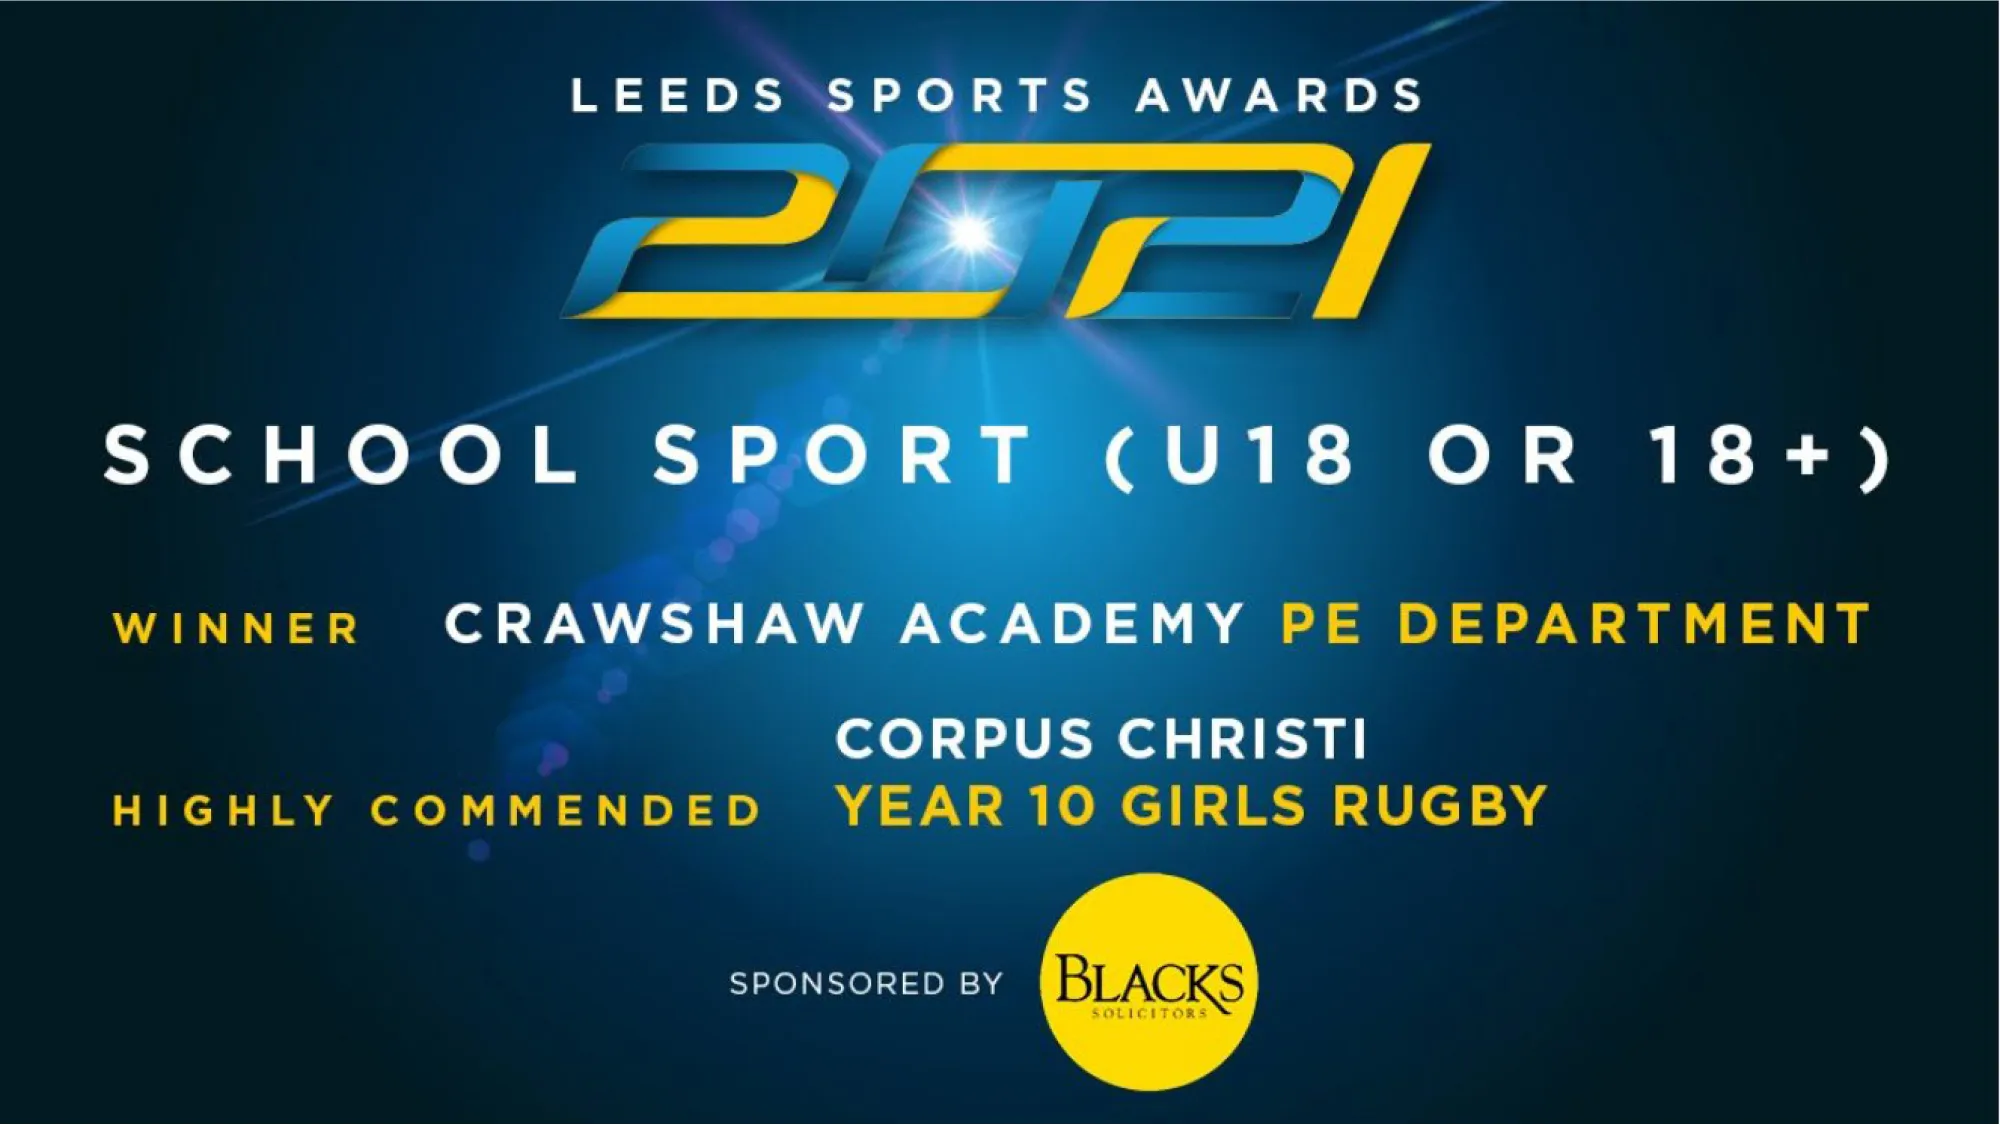 Leeds Sports Awards